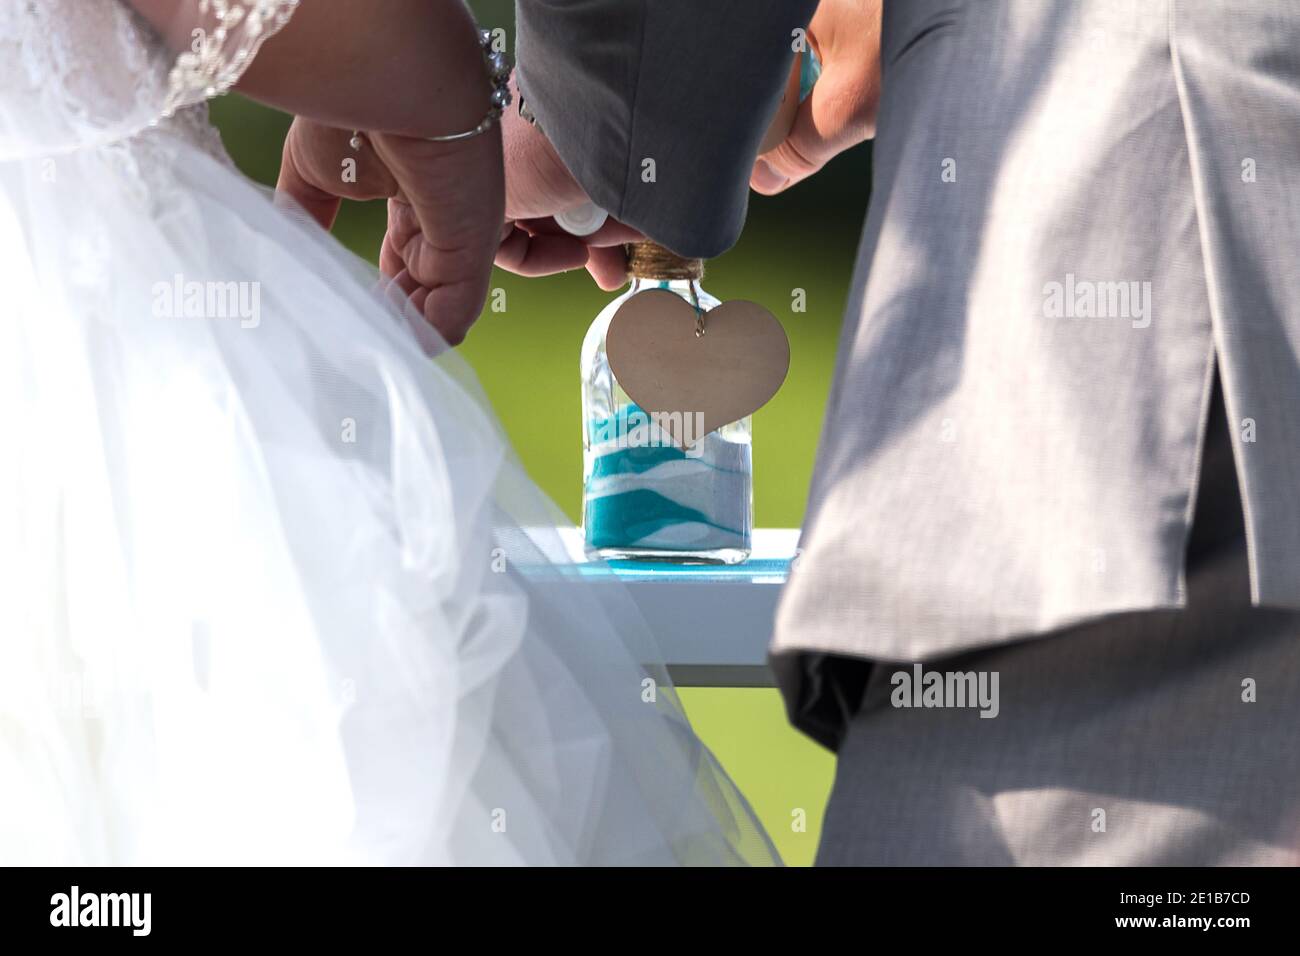 Ein Paar, das während ihrer Hochzeitszeremonie in einem Sandritual Sand zu einem Glas hinzufügt. Platz für Kopien Stockfoto